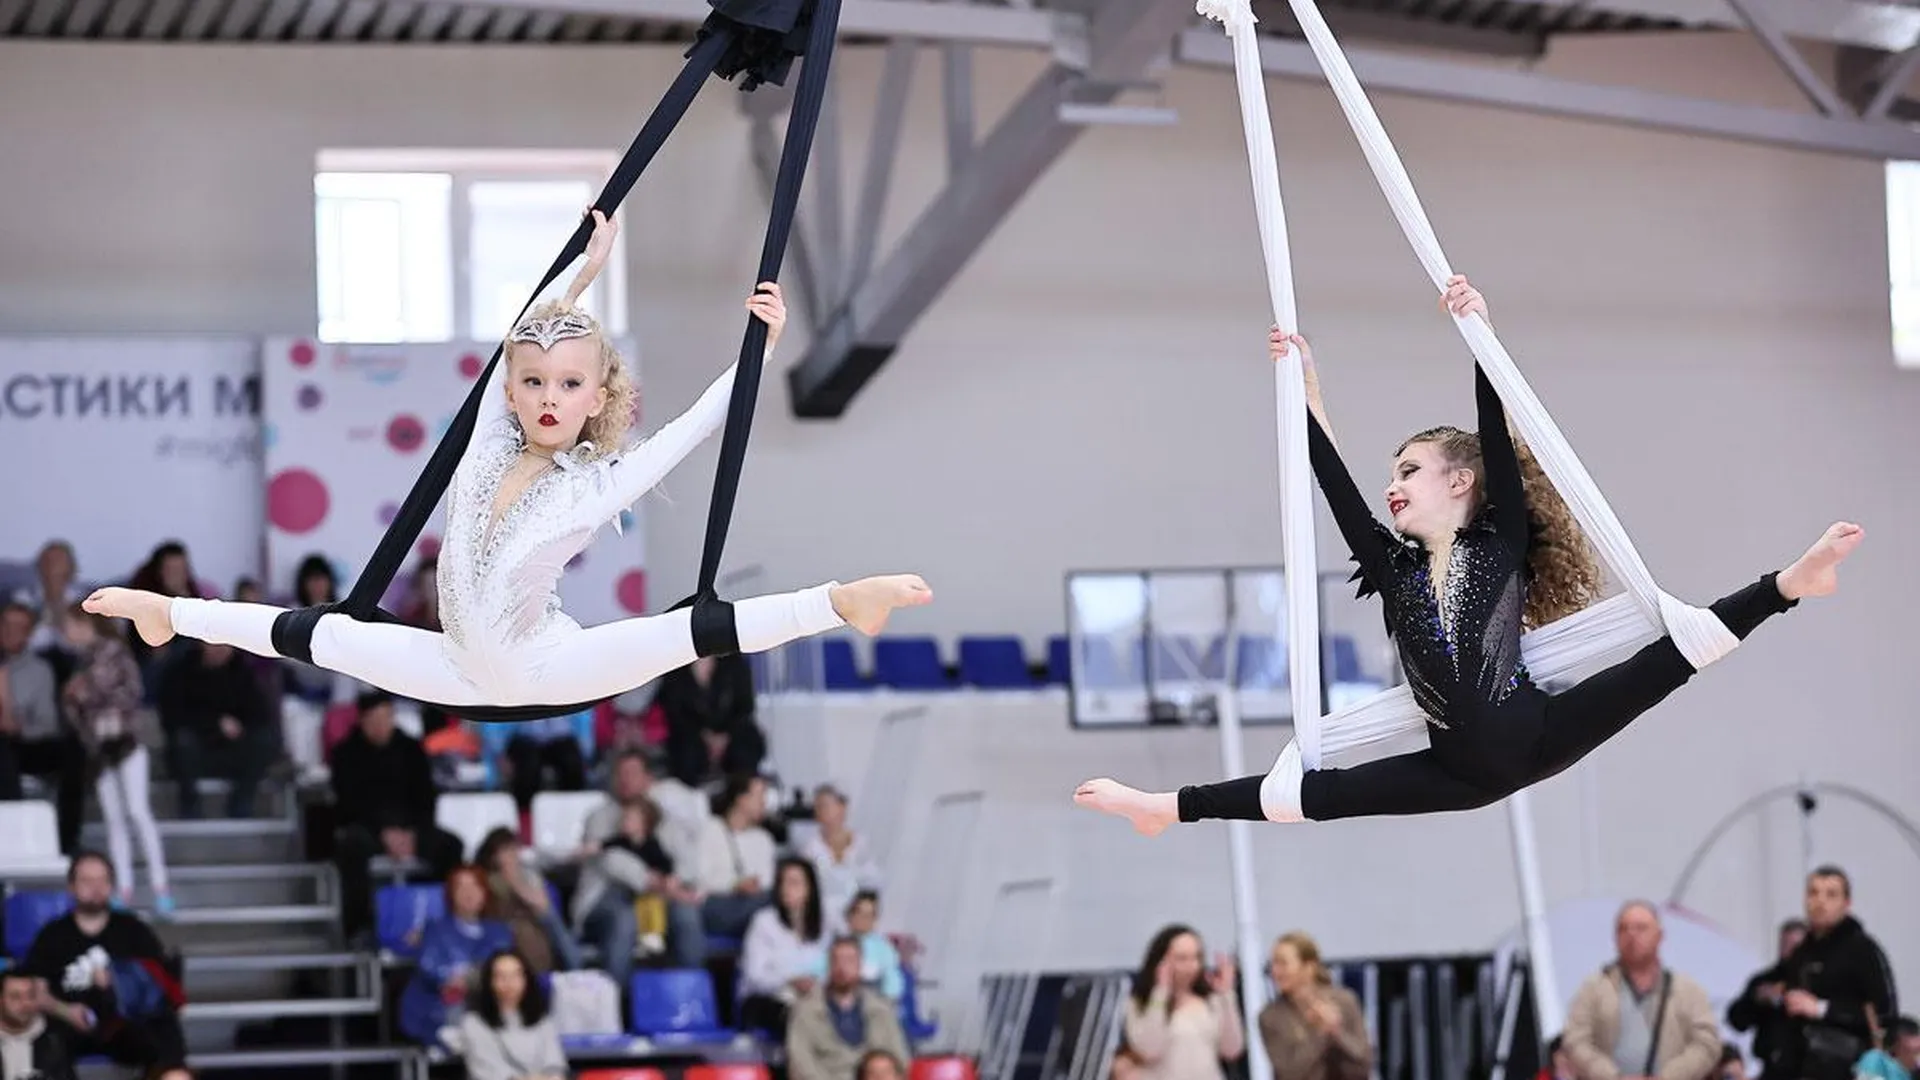 VII Всероссийский фестиваль «Мой чудесный цирк» пройдет в Подмосковье